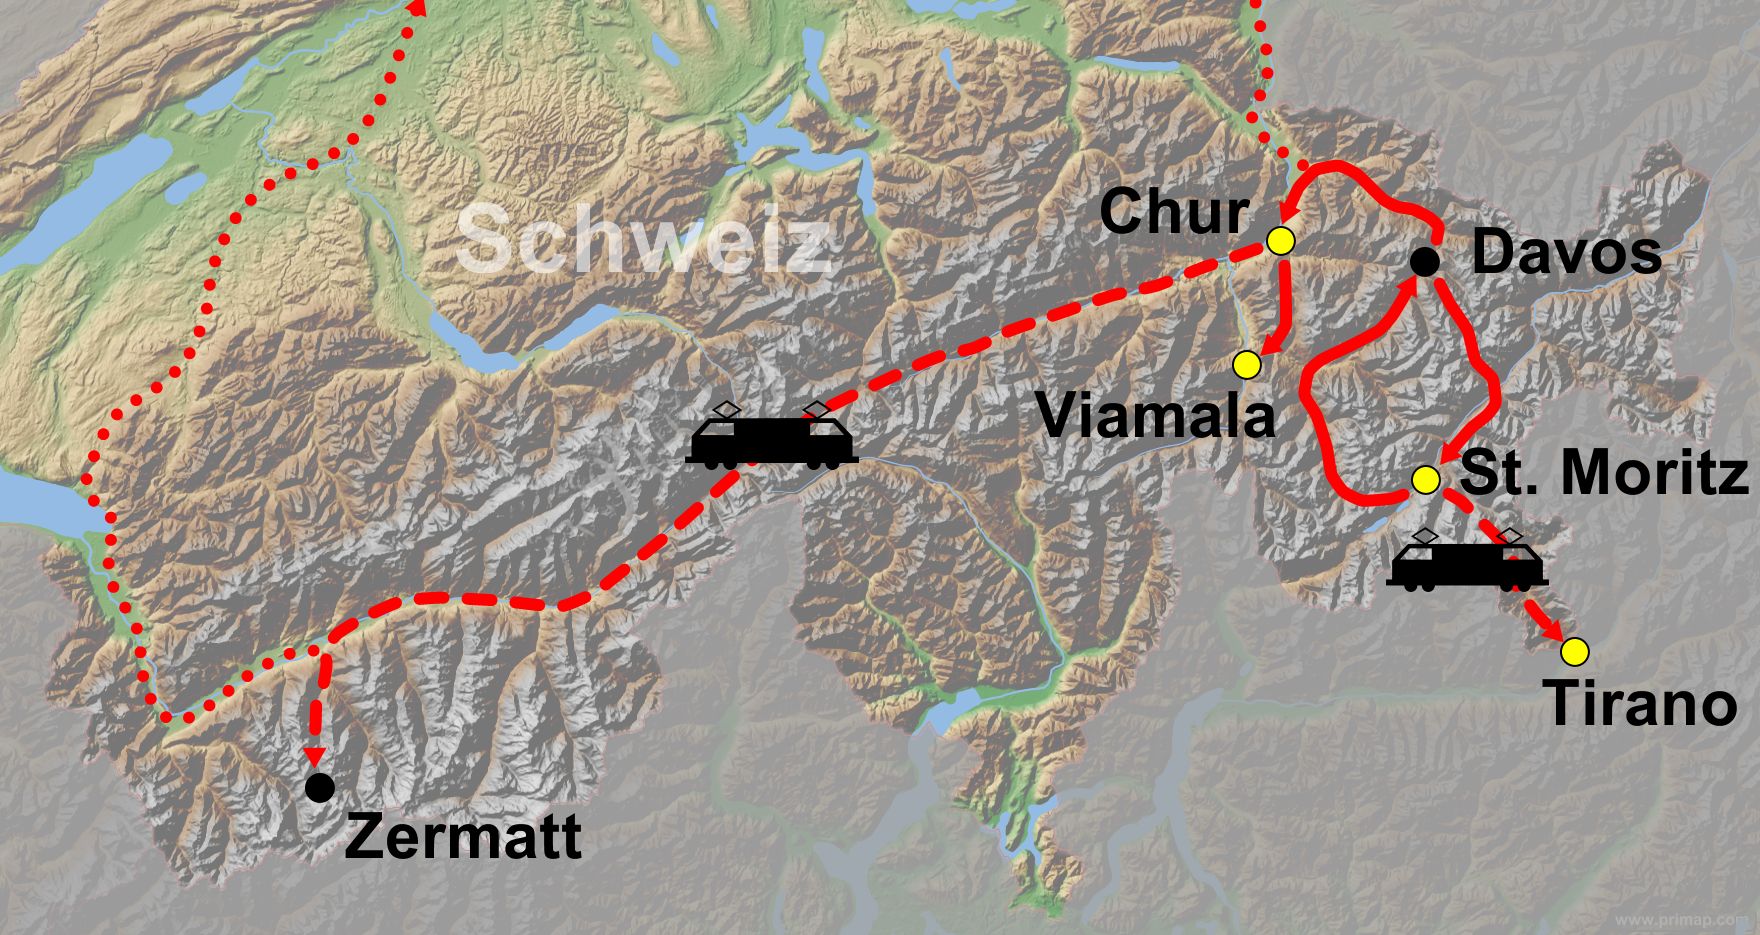 Karte Schweiz_Davos_Zermatt